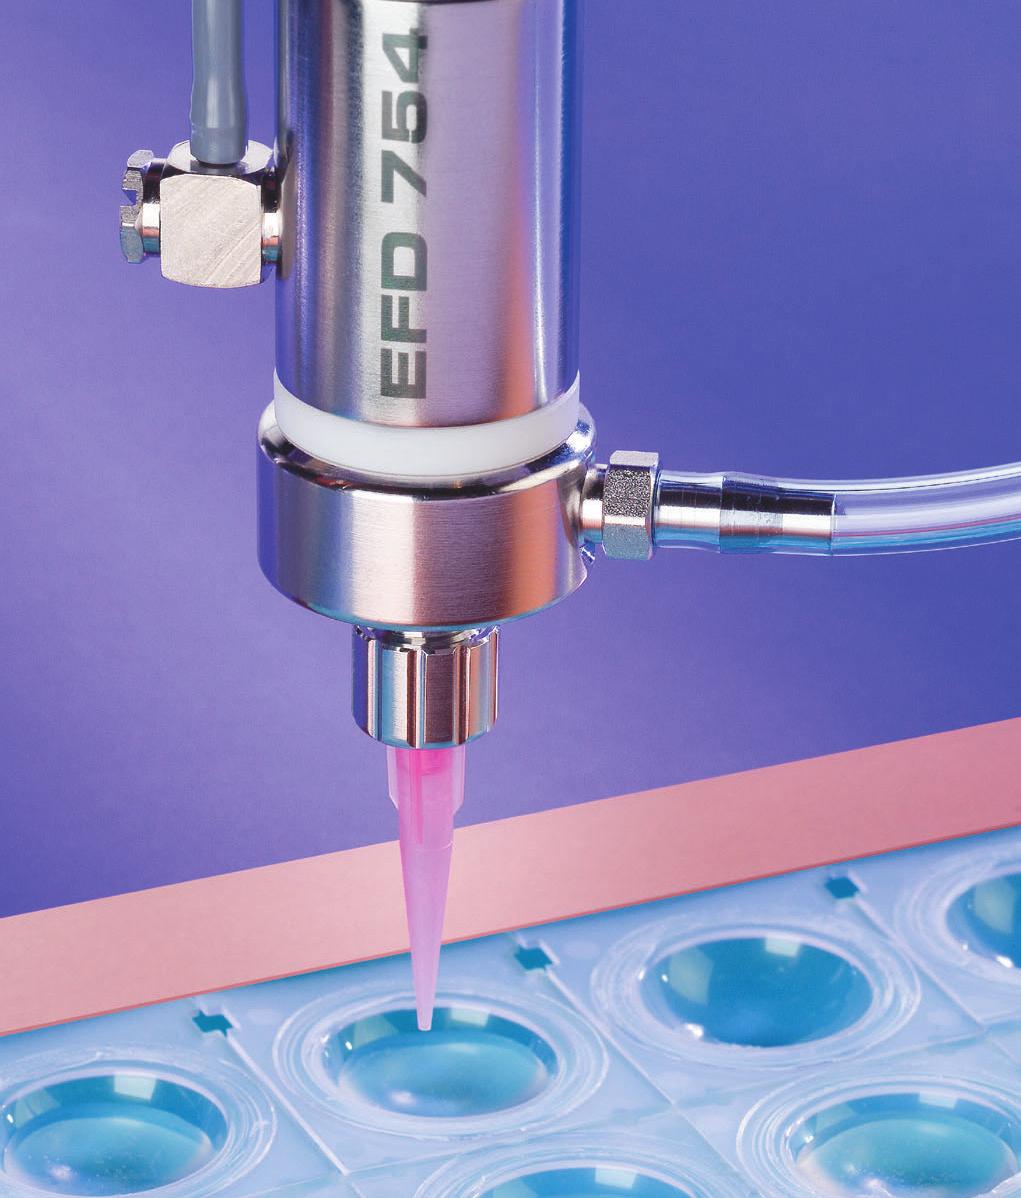 Aplicaciones asépticas Las válvulas asépticas de Nordson EFD han sido diseñadas para controlar con precisión la aplicación de la mayoría de los fluidos de baja a media viscosidad utilizados en